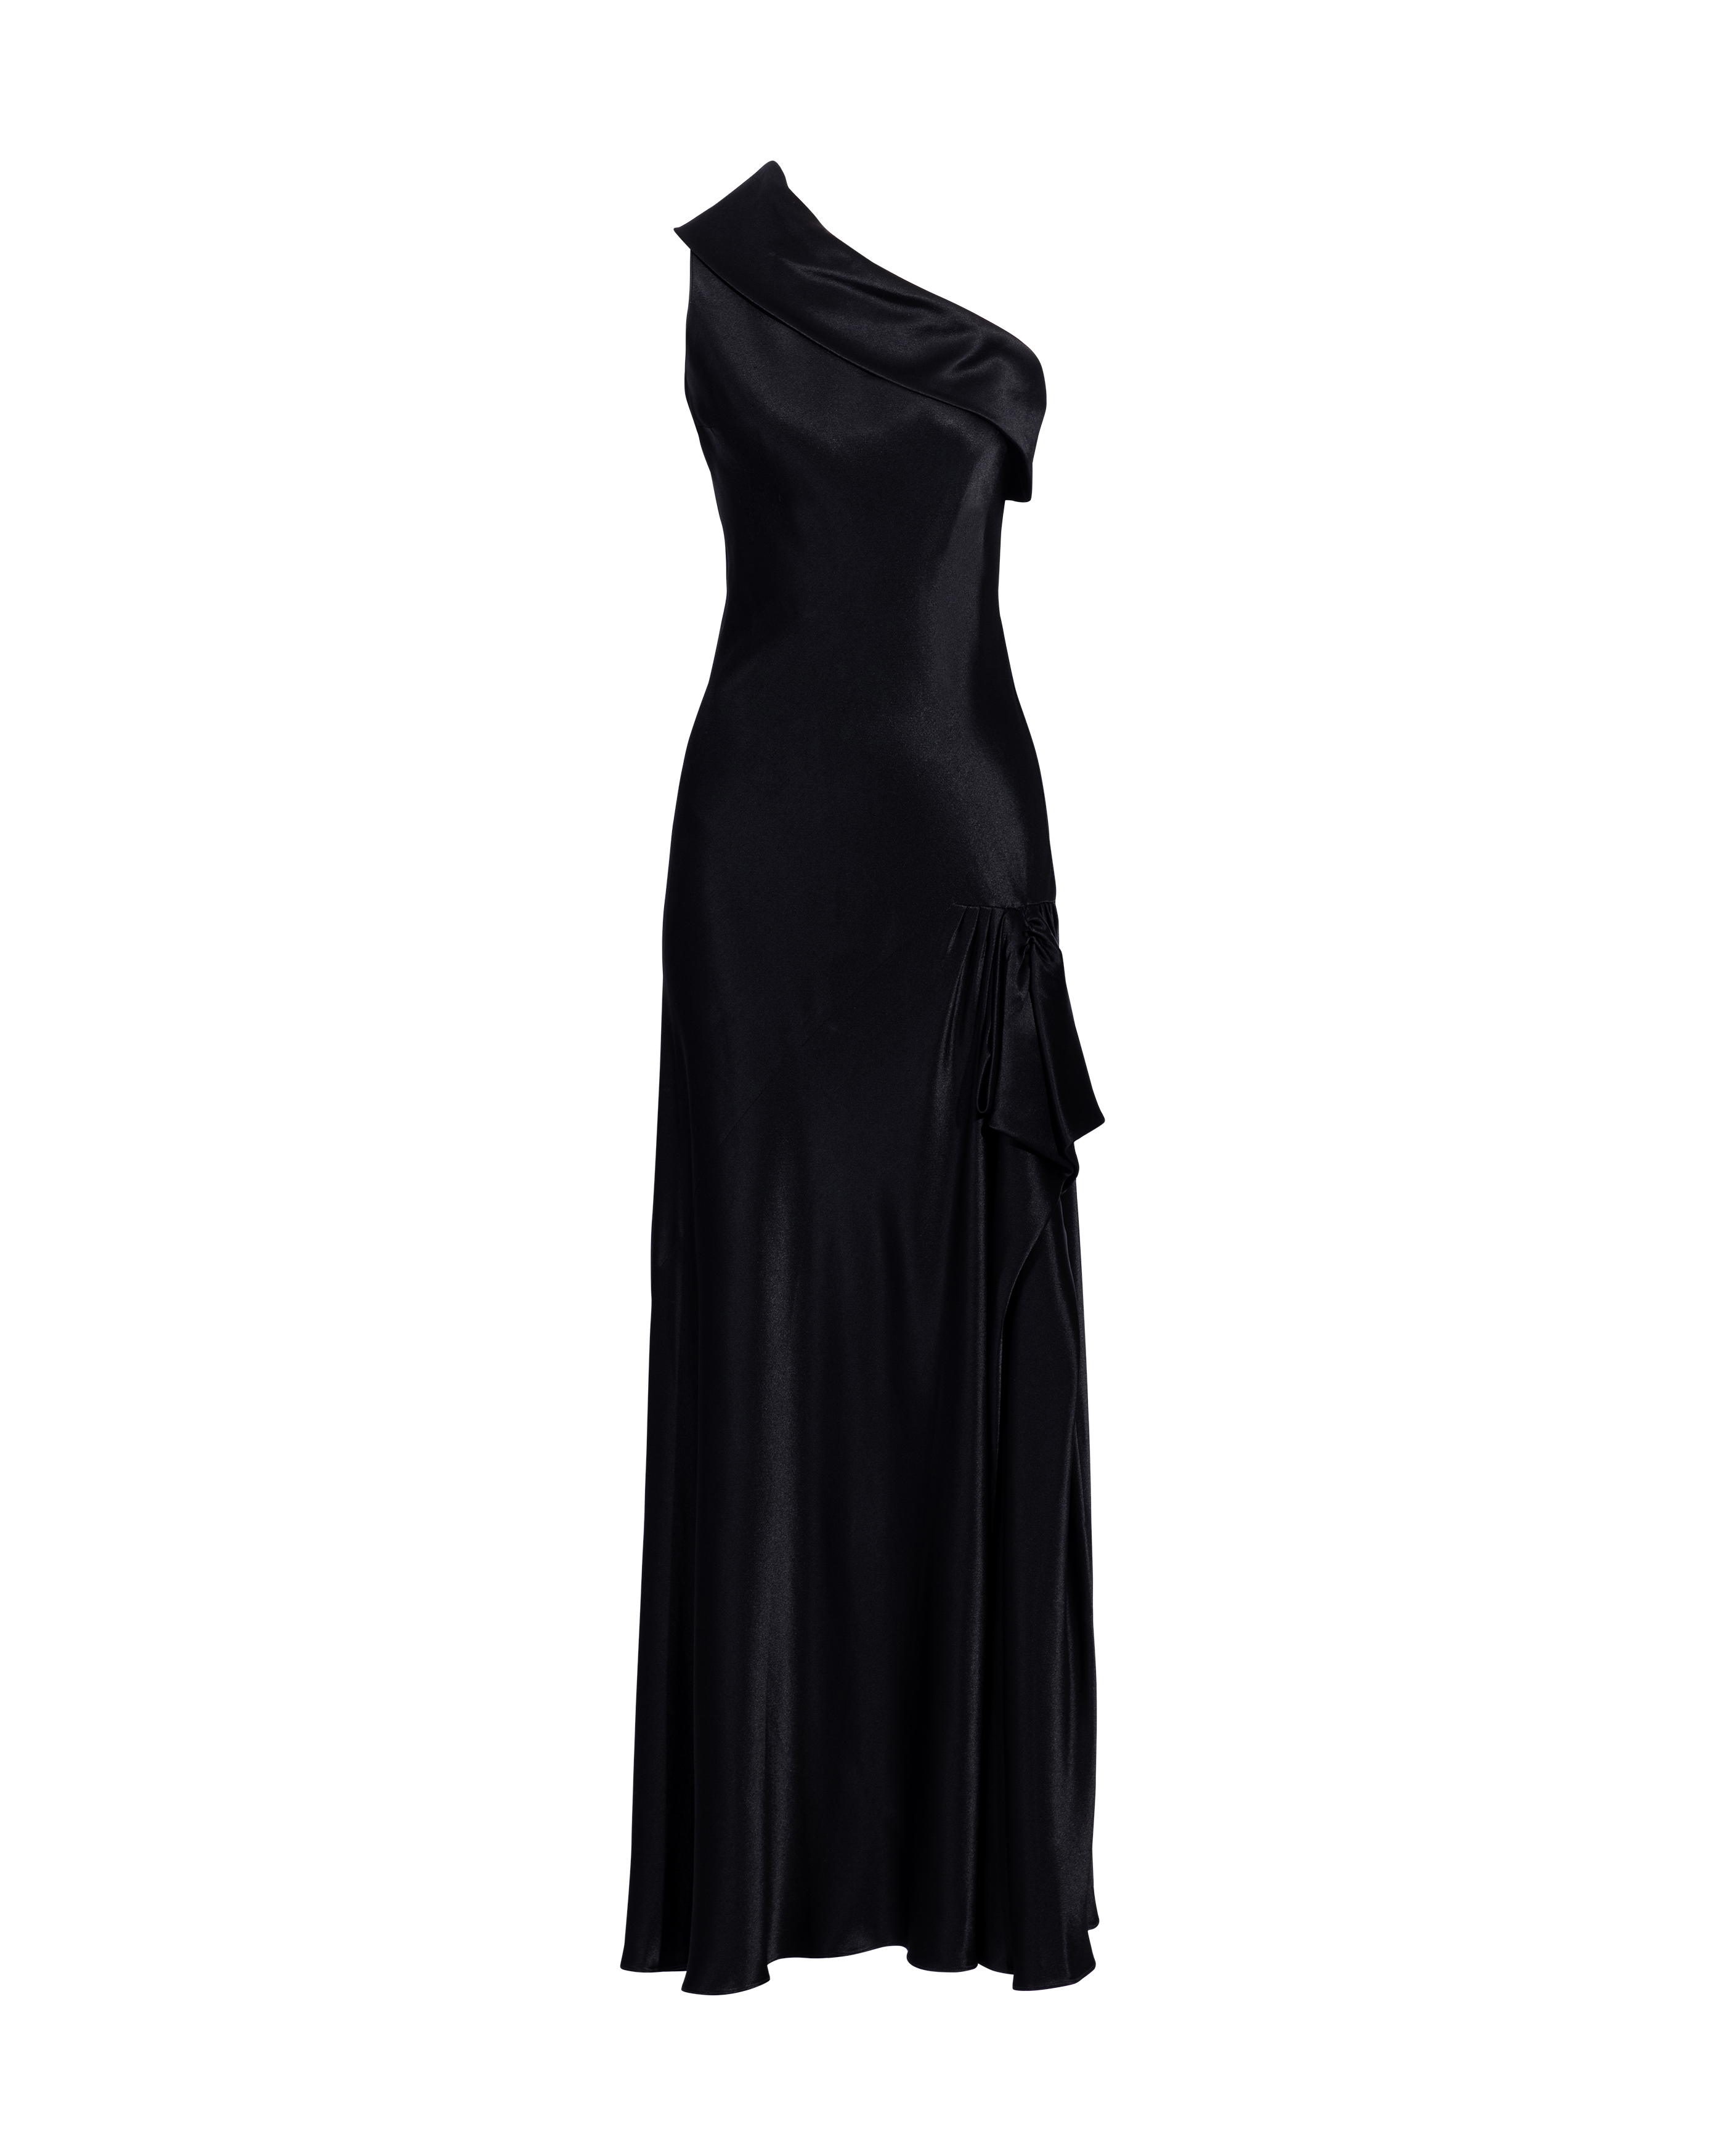 S/S 1996 Black Bias Cut Asymmetrical Gown